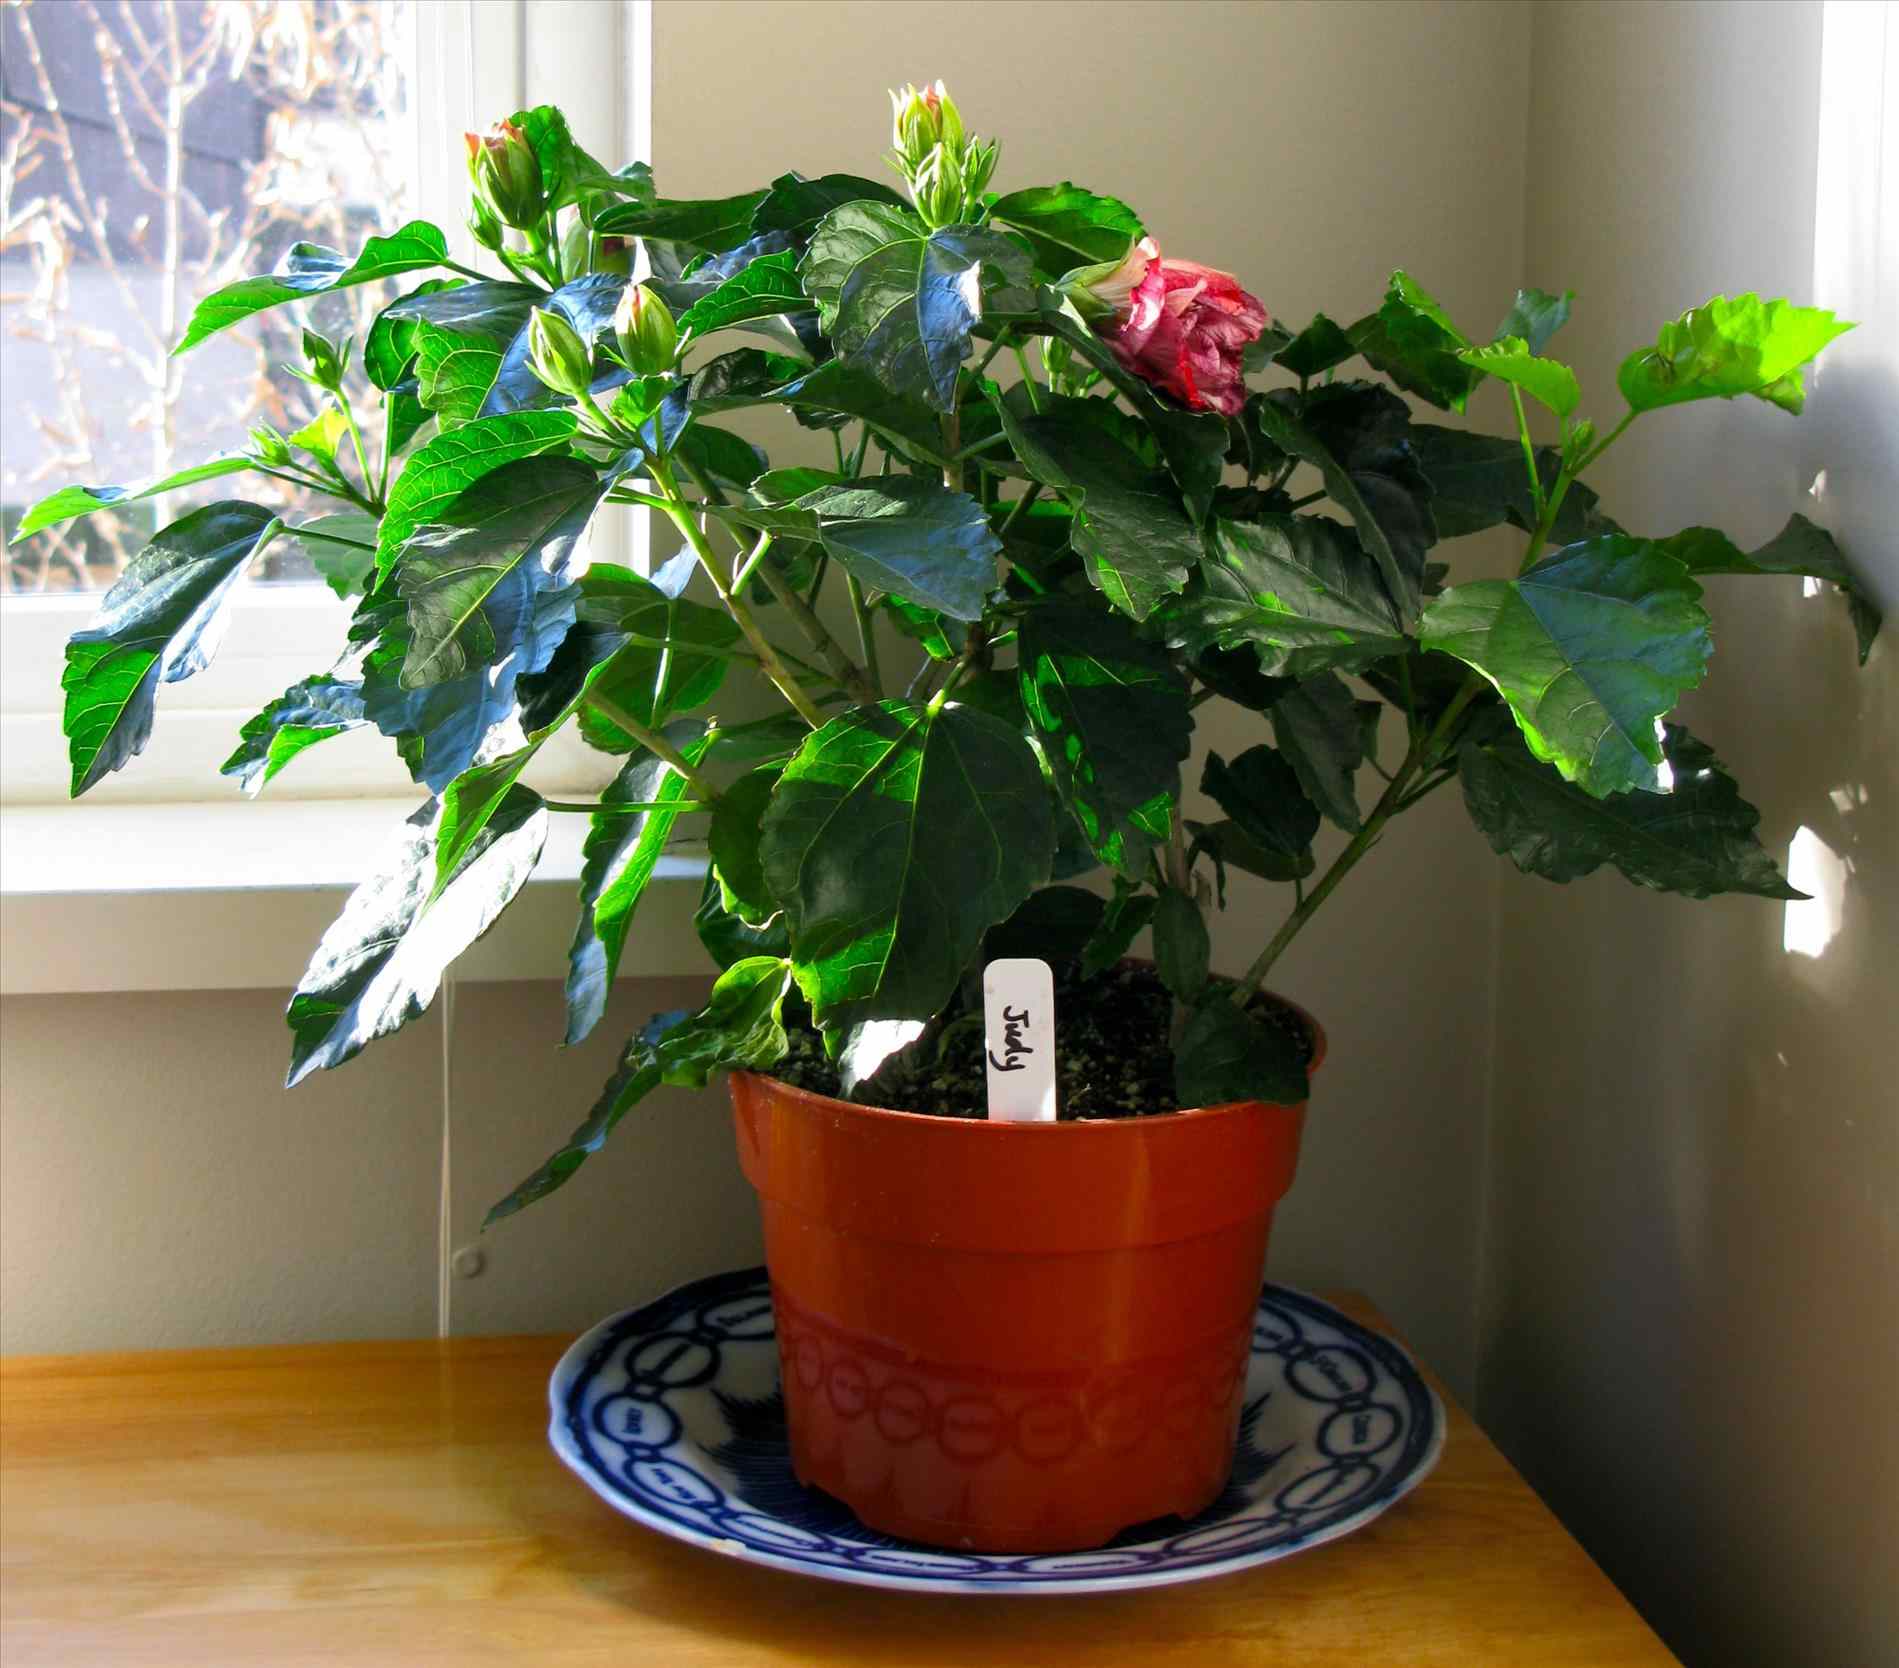 Китайская роза или гибискус комнатный: уход в домашних условиях, период цветения и покоя, особенности посезонного содержания цветка